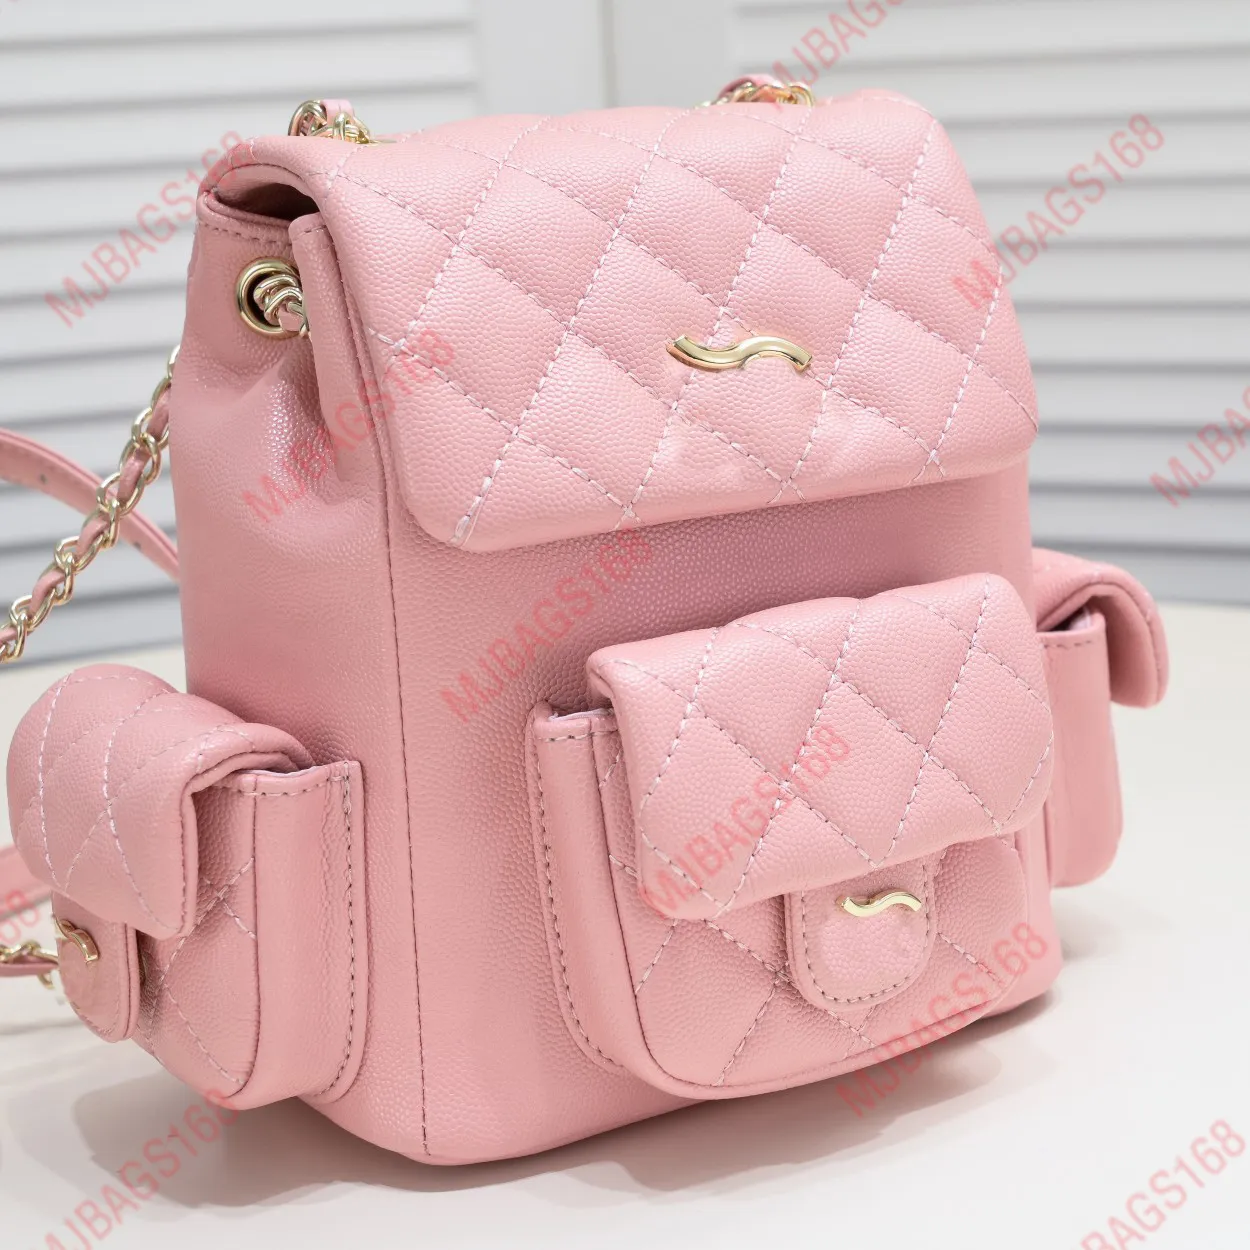 rosafarbener Rucksack, Luxus-Designertaschen, Handrucksack, Designerhandtasche, 23K-Rucksack, Mini-Markenrucksack mit tragbarer Kette, CC-Taschen, Designer-Damentasche